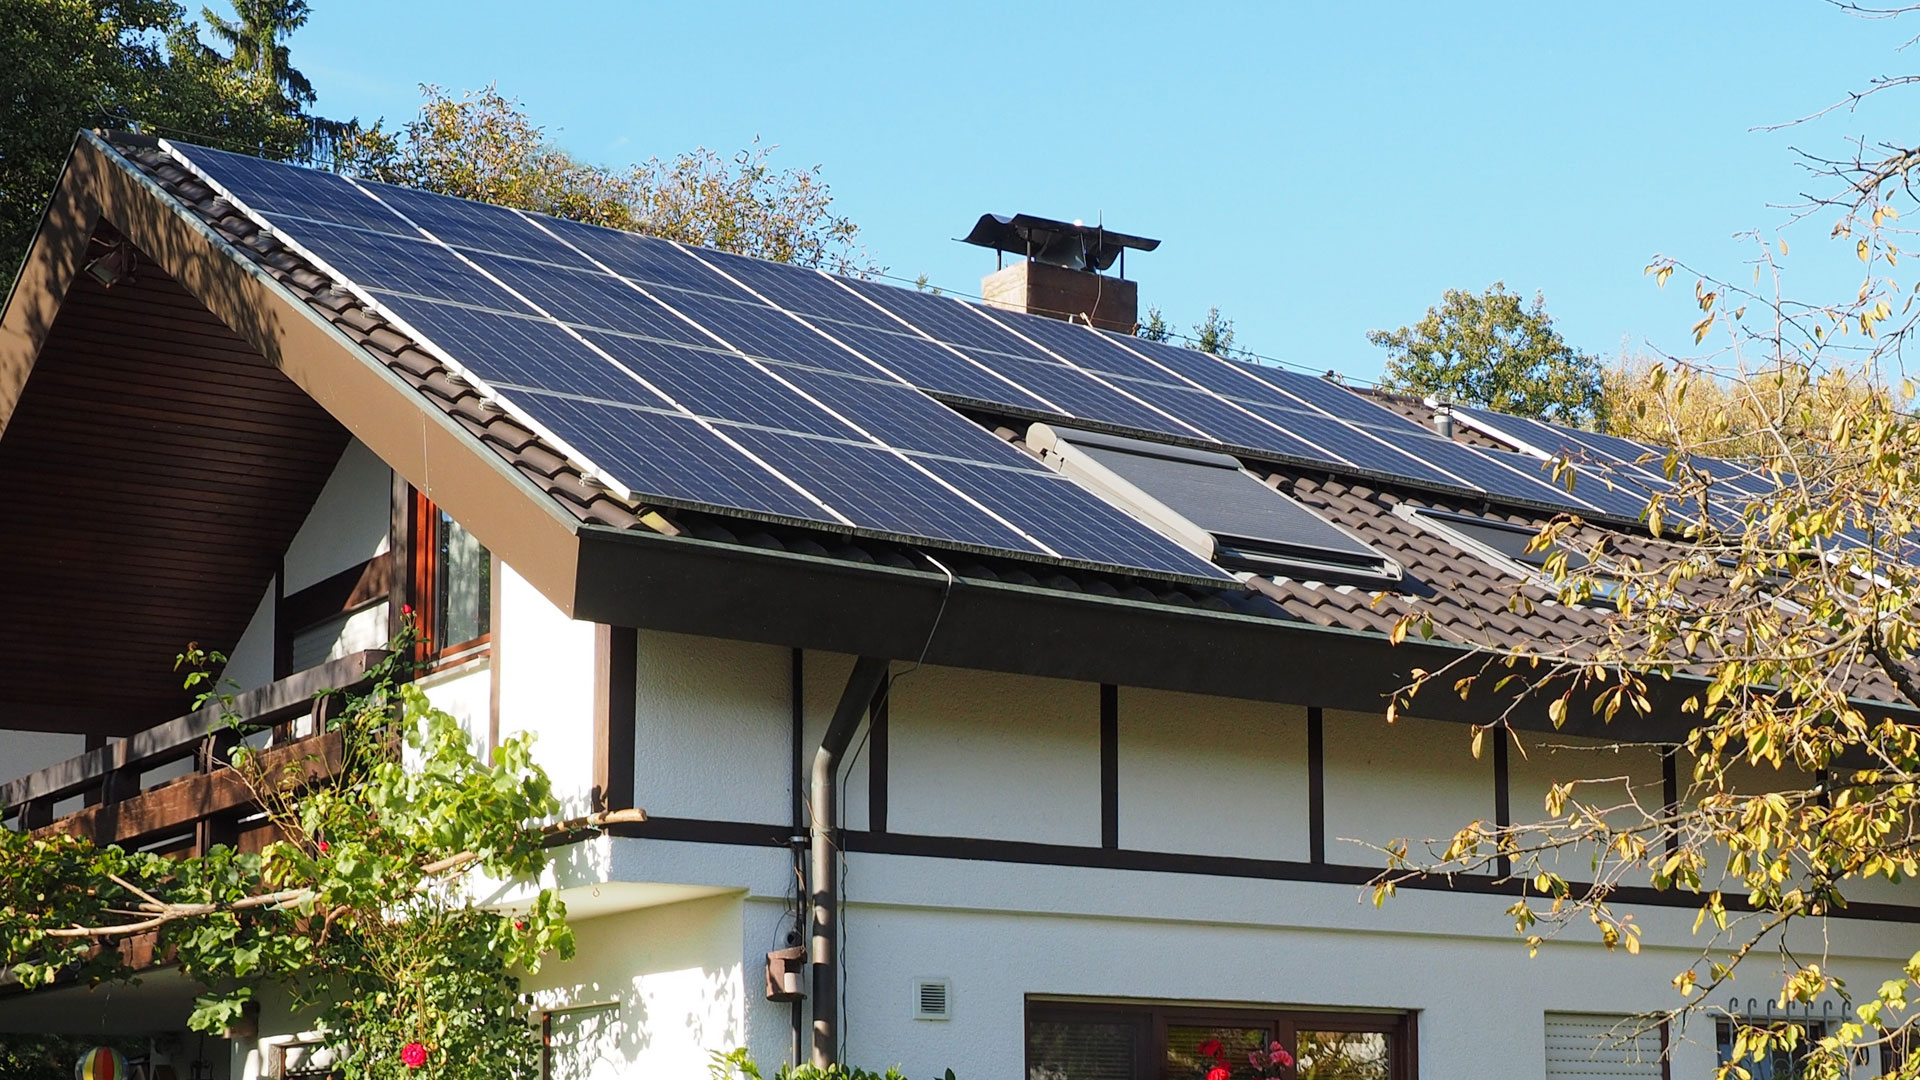 Närbild på ett tak med solceller.